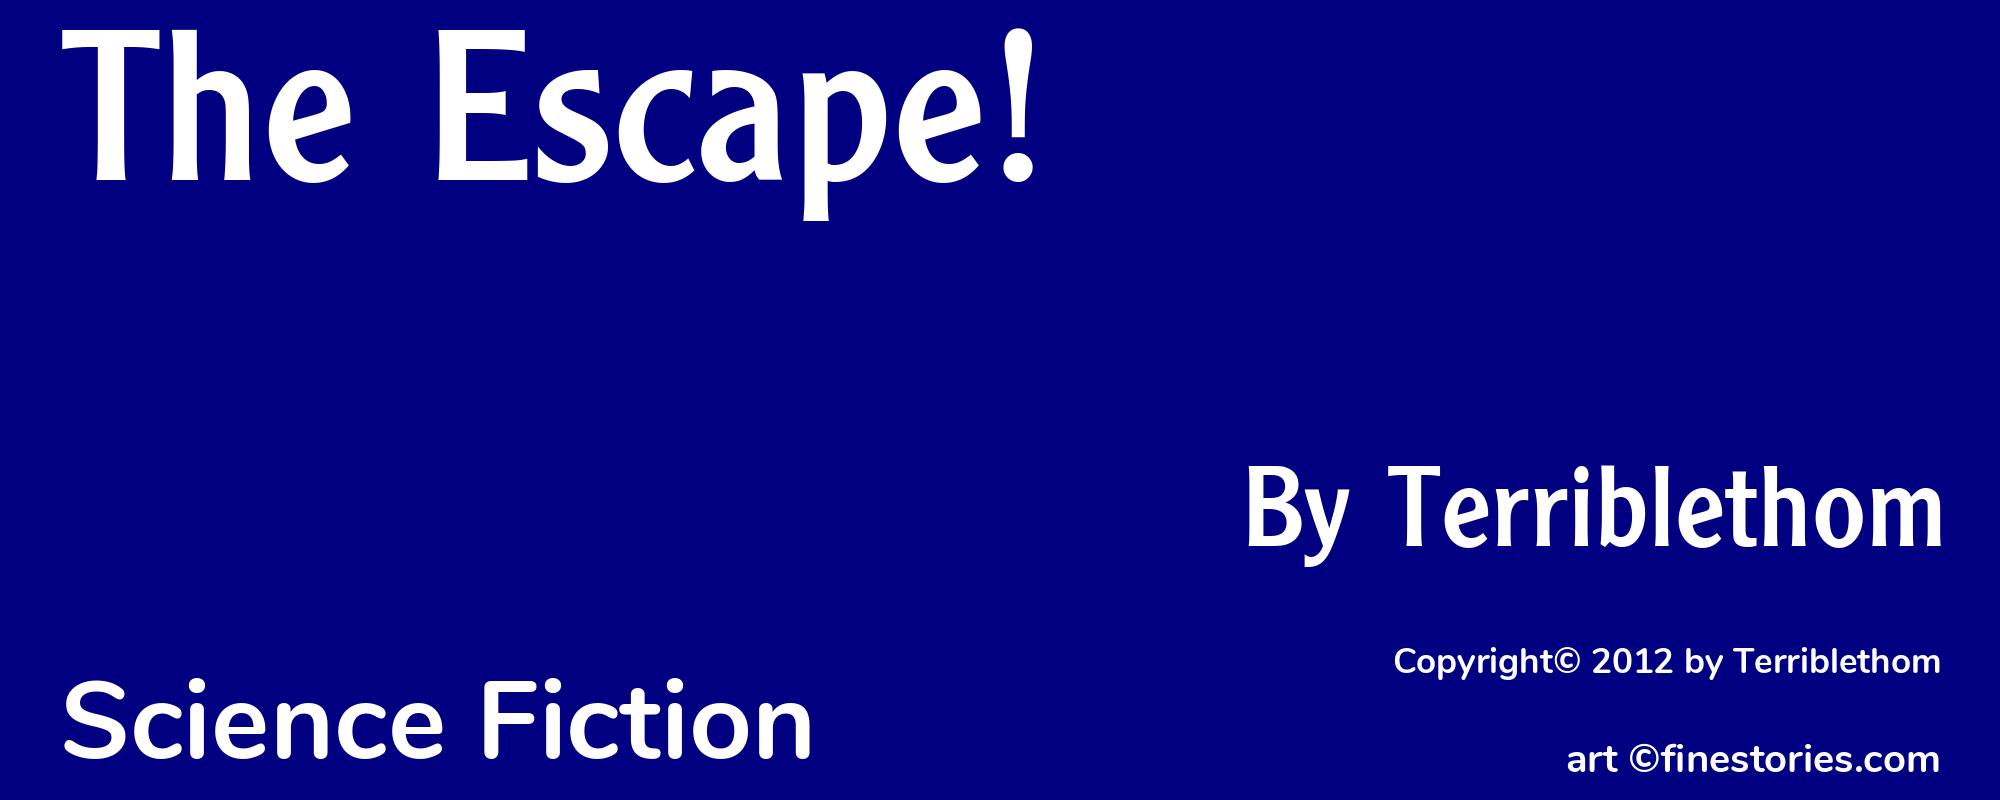 The Escape! - Cover